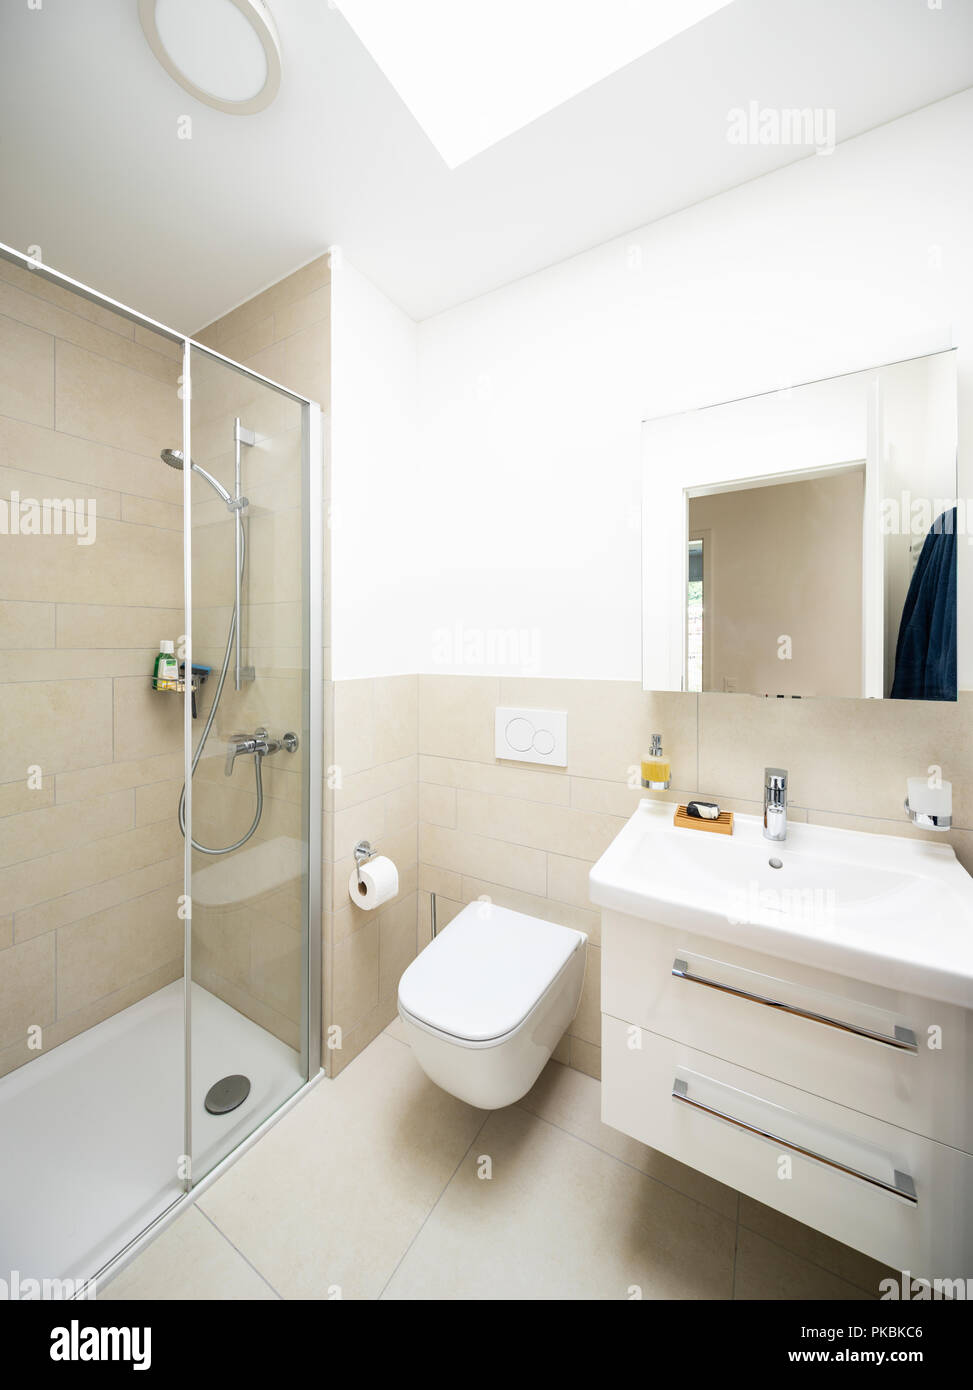 https://c8.alamy.com/comp/PKBKC6/white-bathroom-of-a-modern-apartment-nobody-inside-and-not-so-big-PKBKC6.jpg